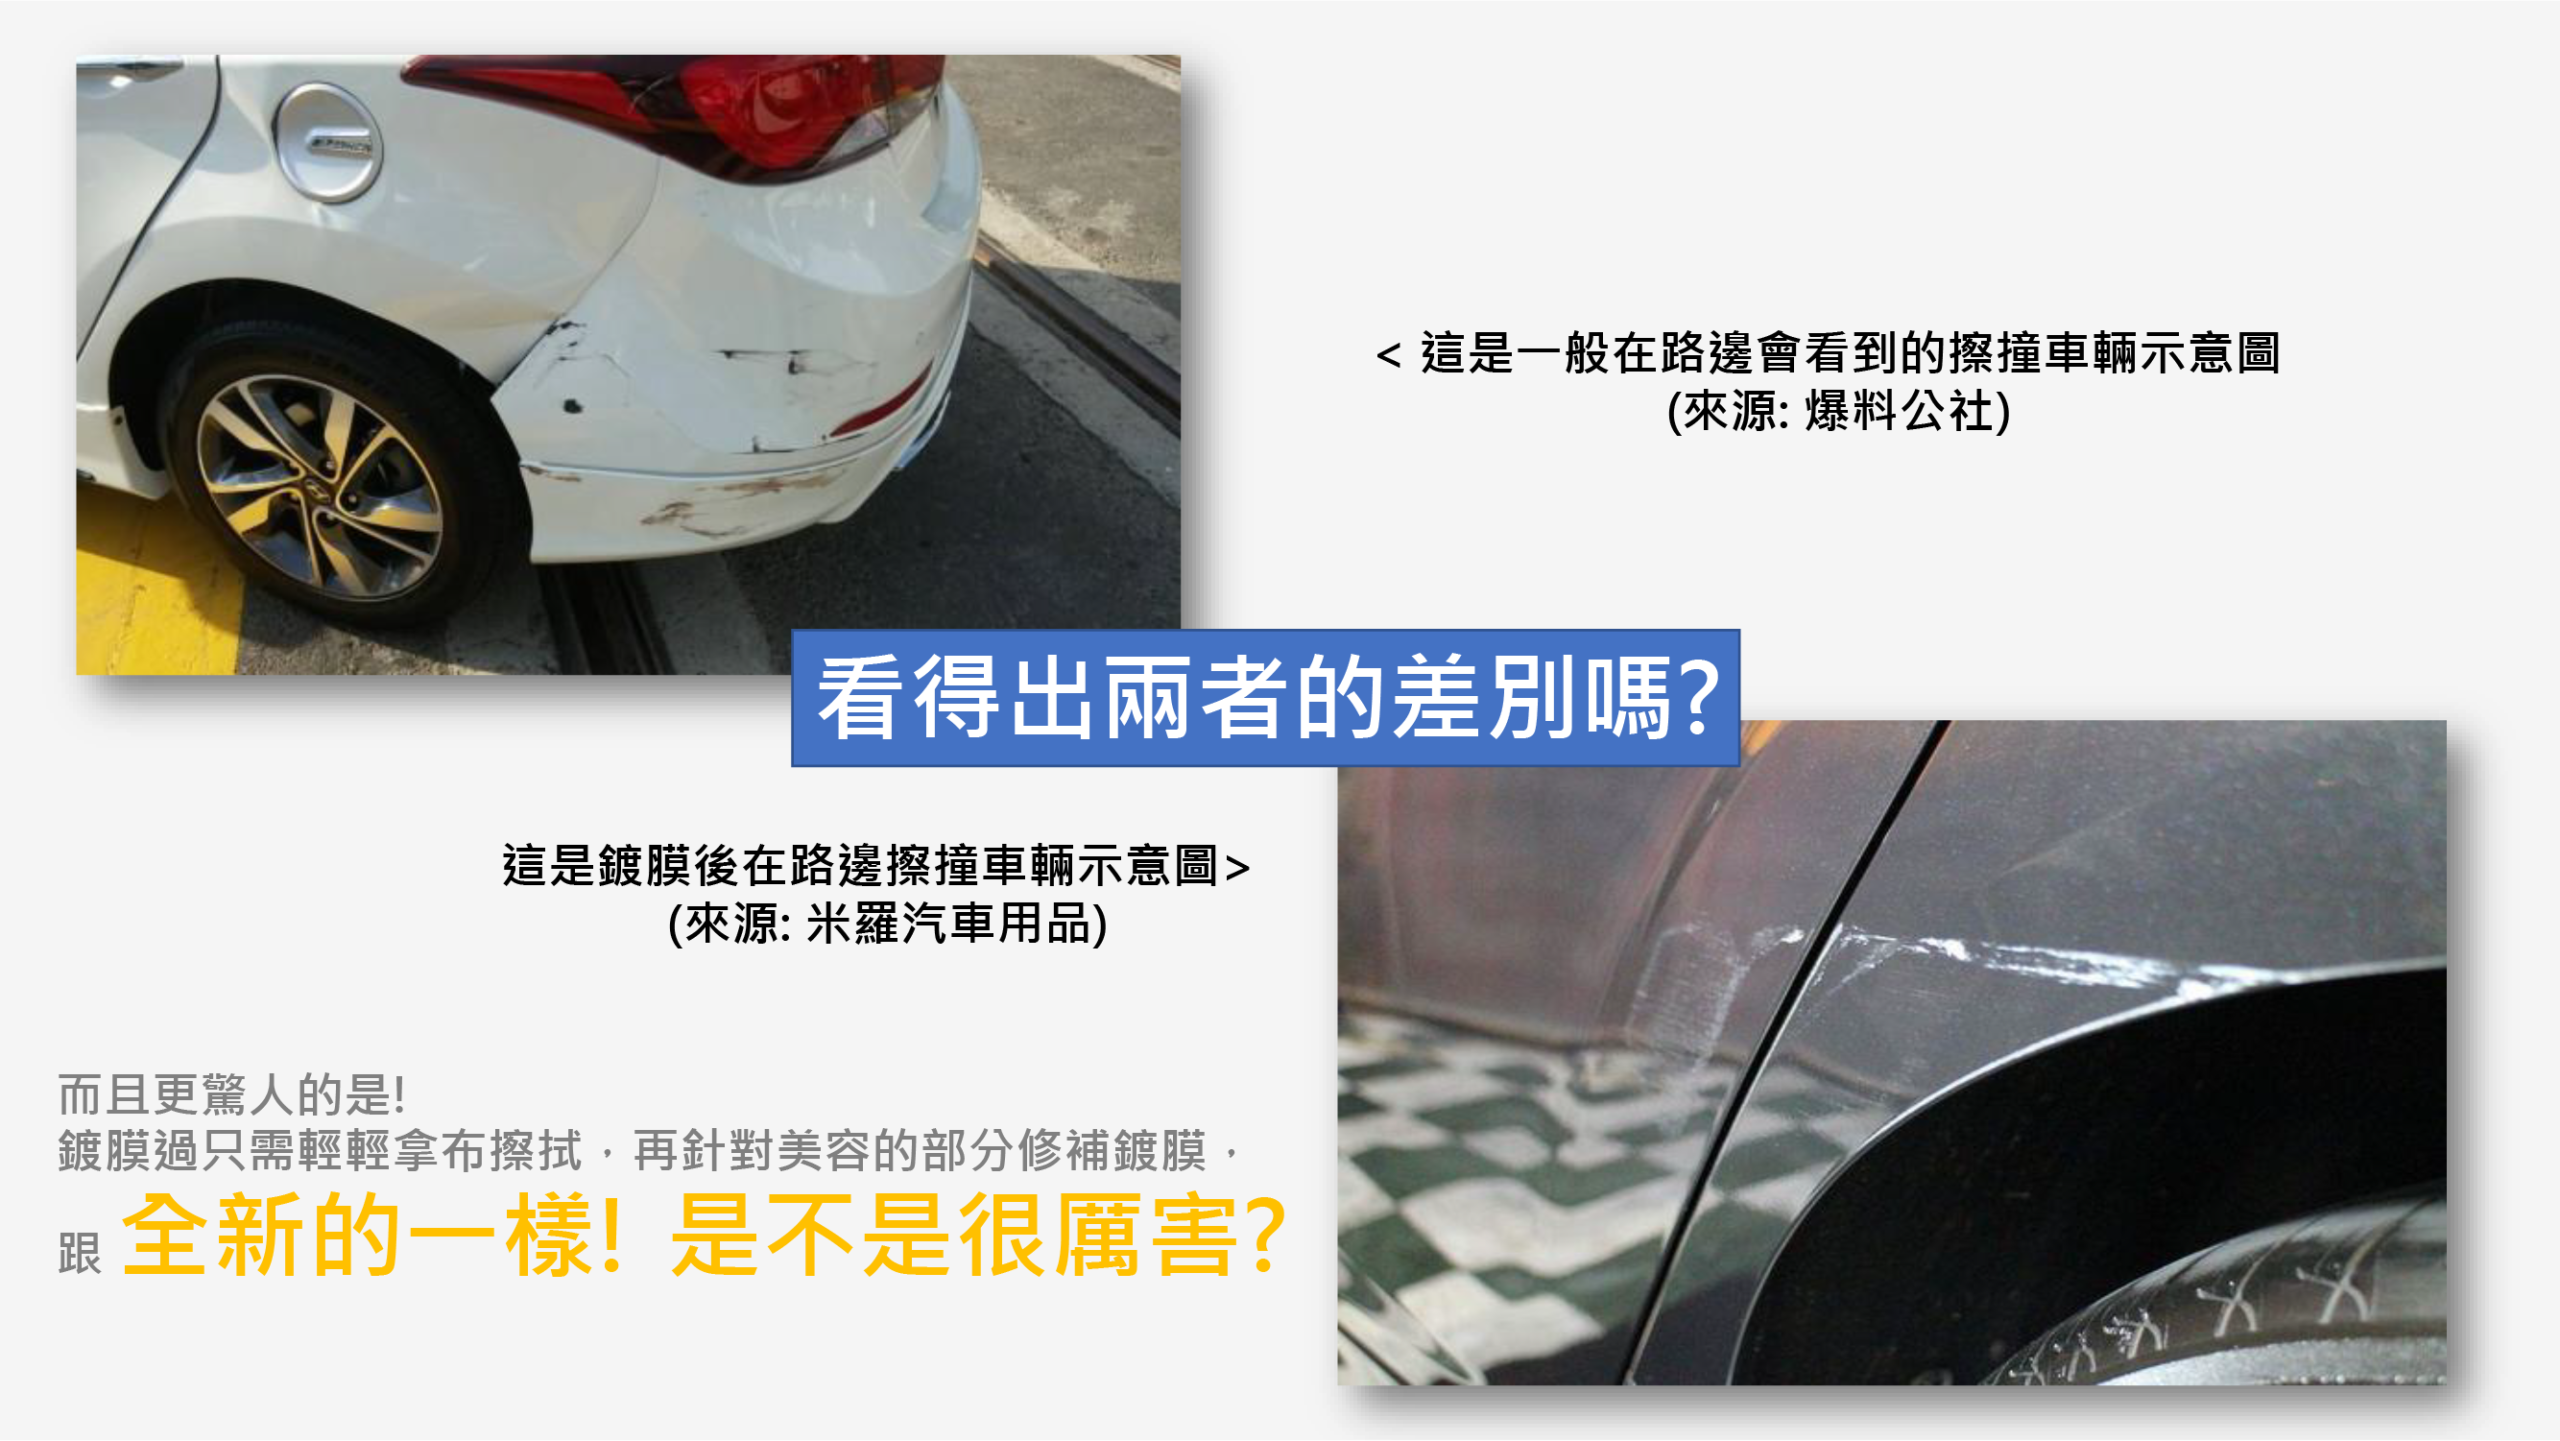 竹北洗車推薦-鍍膜二部曲-鍍膜的好處-精華圖片